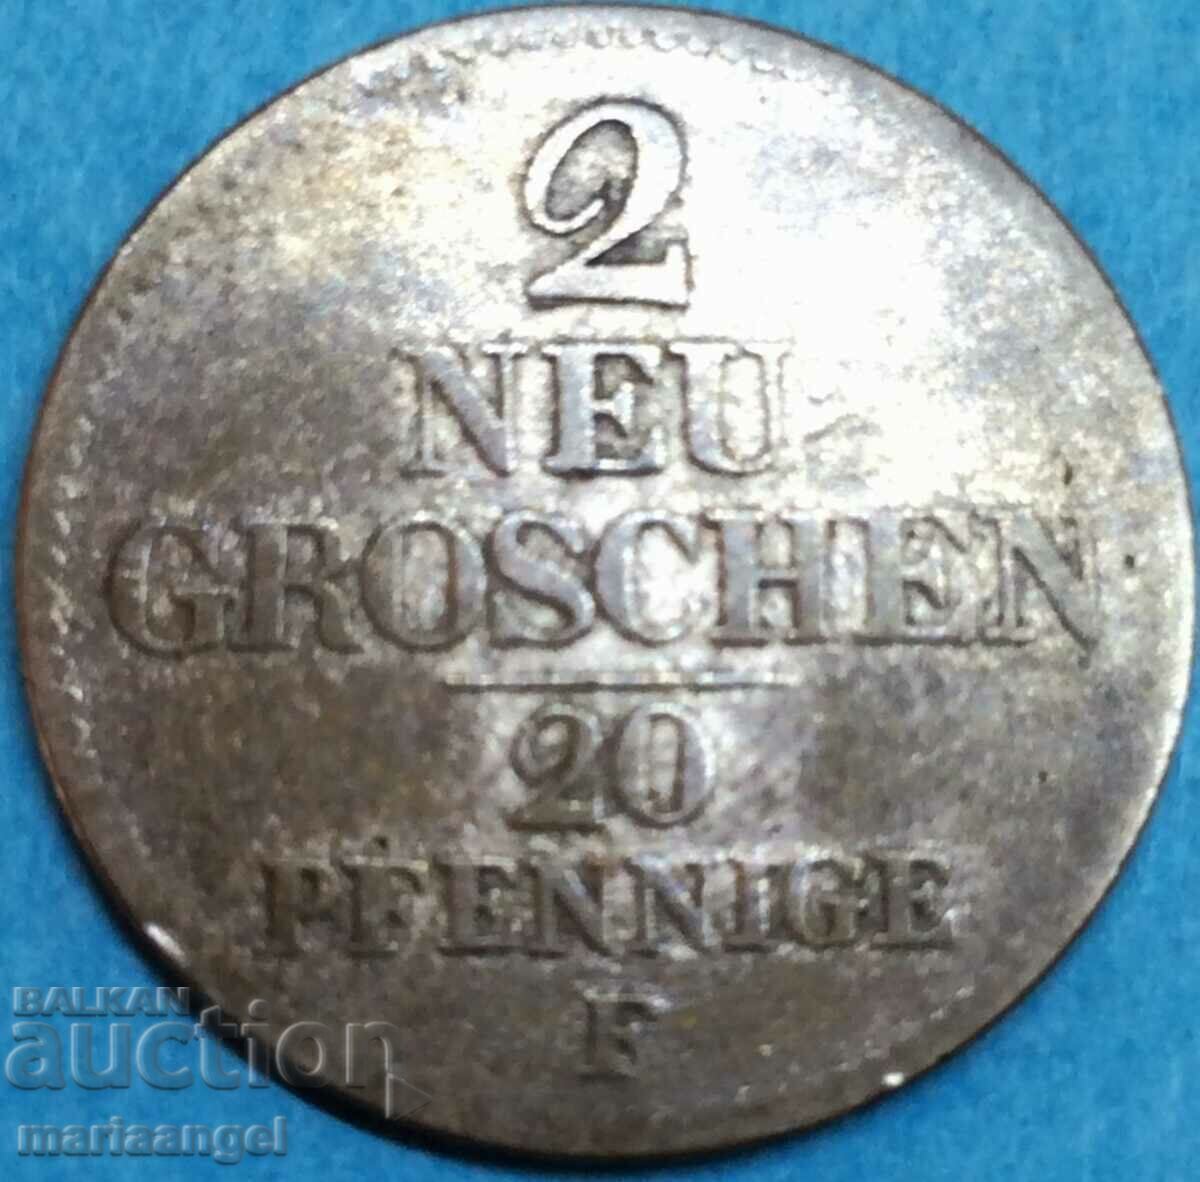 Saxonia 2 groschen noi 20 pfennig 1856 Germania argint